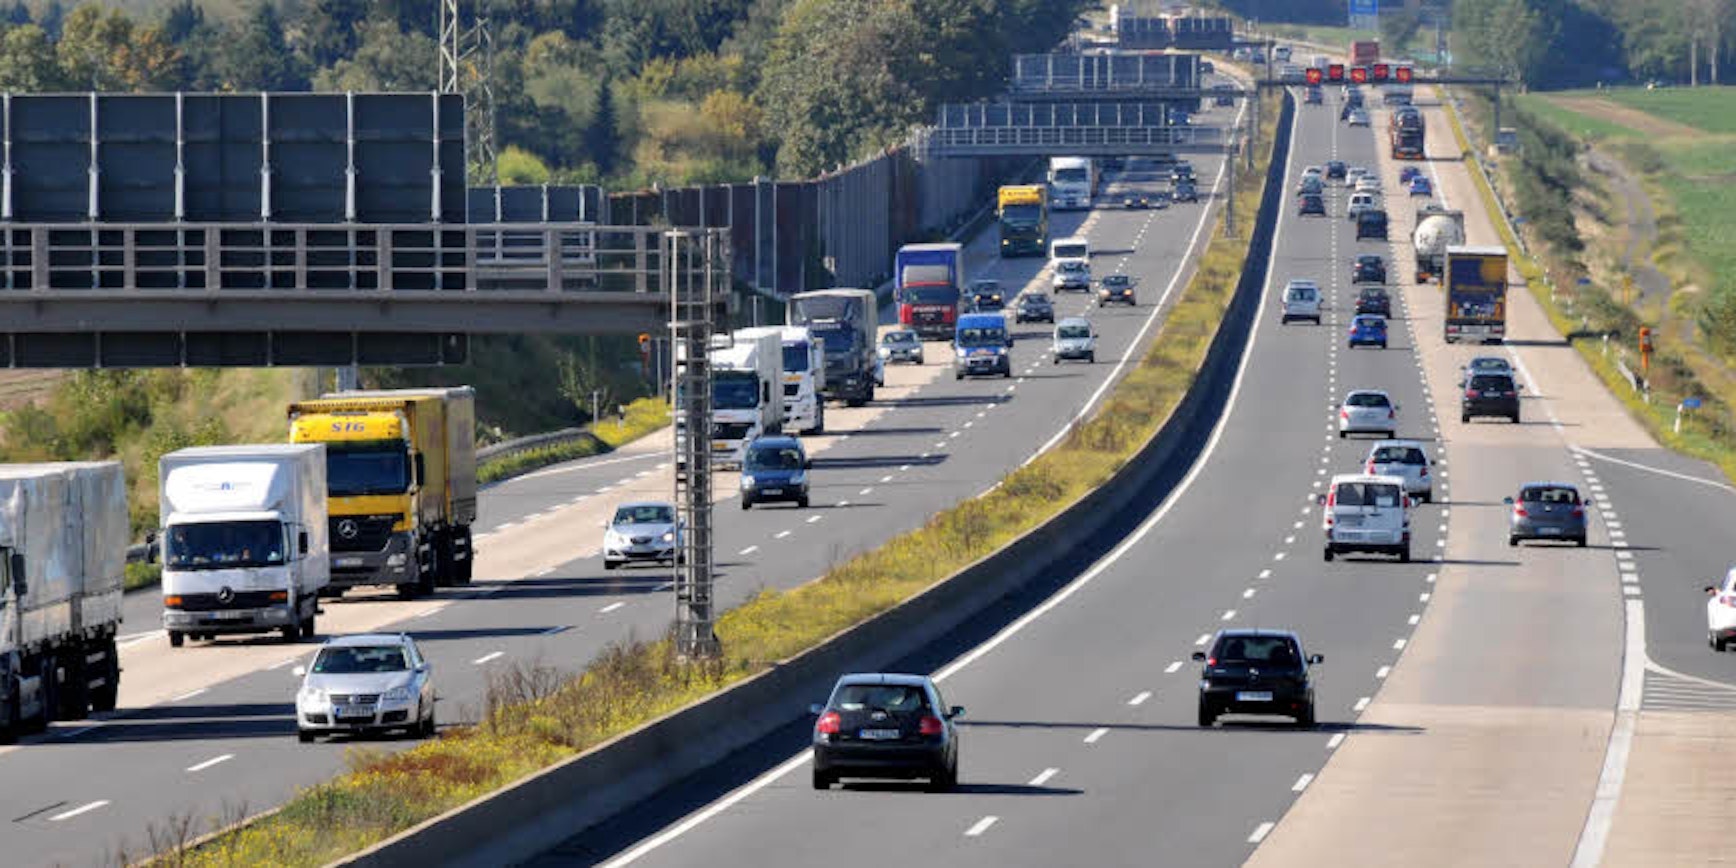 Vierspurig soll die A4 in beiden Richtungen in Höhe der Anschlussstelle Frechen-Nord werden. Die Maßnahme werde, so die Einschätzung einiger Lindenthaler Bezirksvertreter, „erheblichen Einfluss“ auf die Verkehrsströme im Kölner Westen haben.